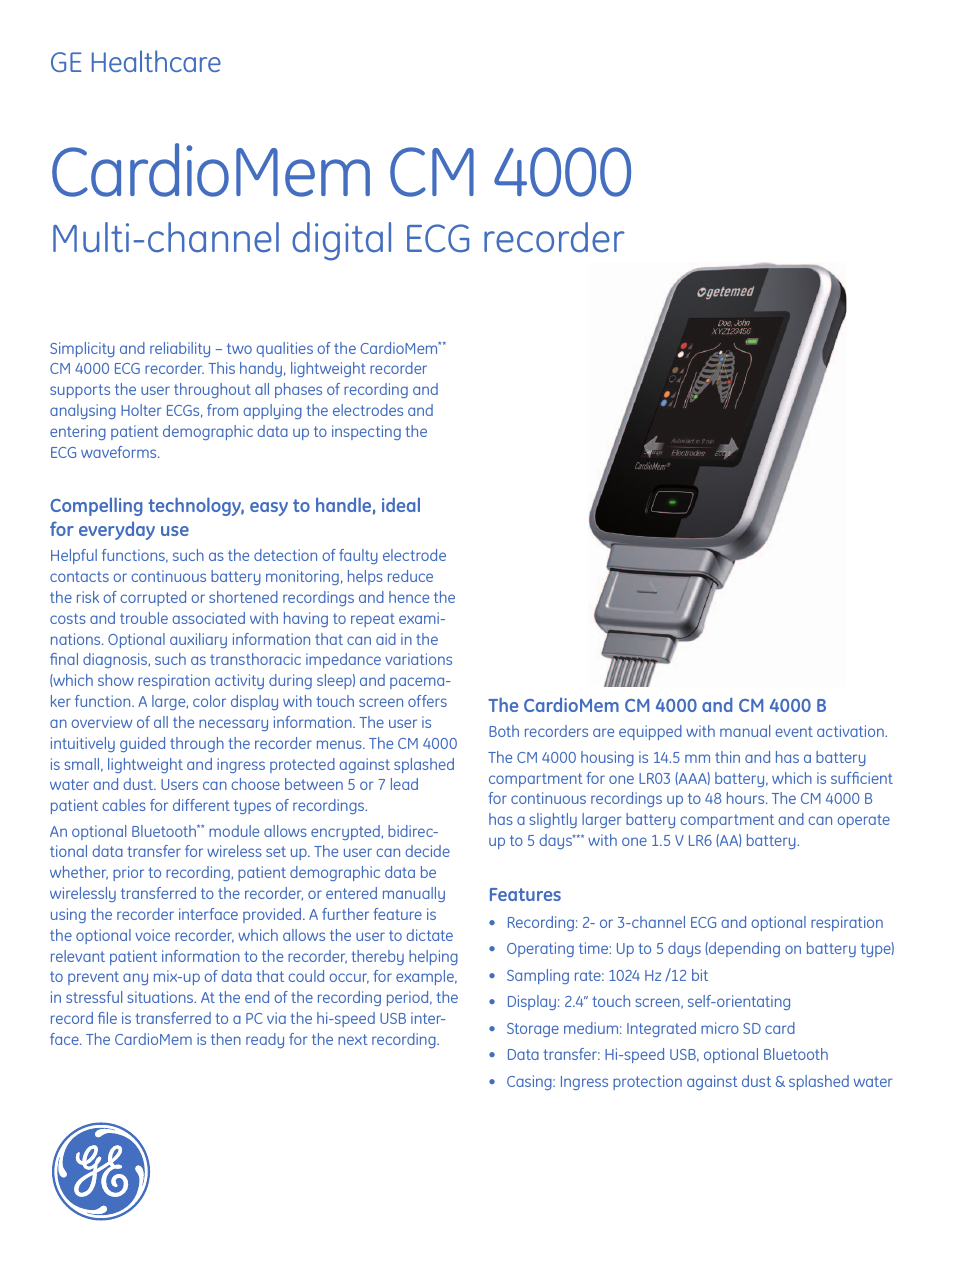 CardioMem CM 4000